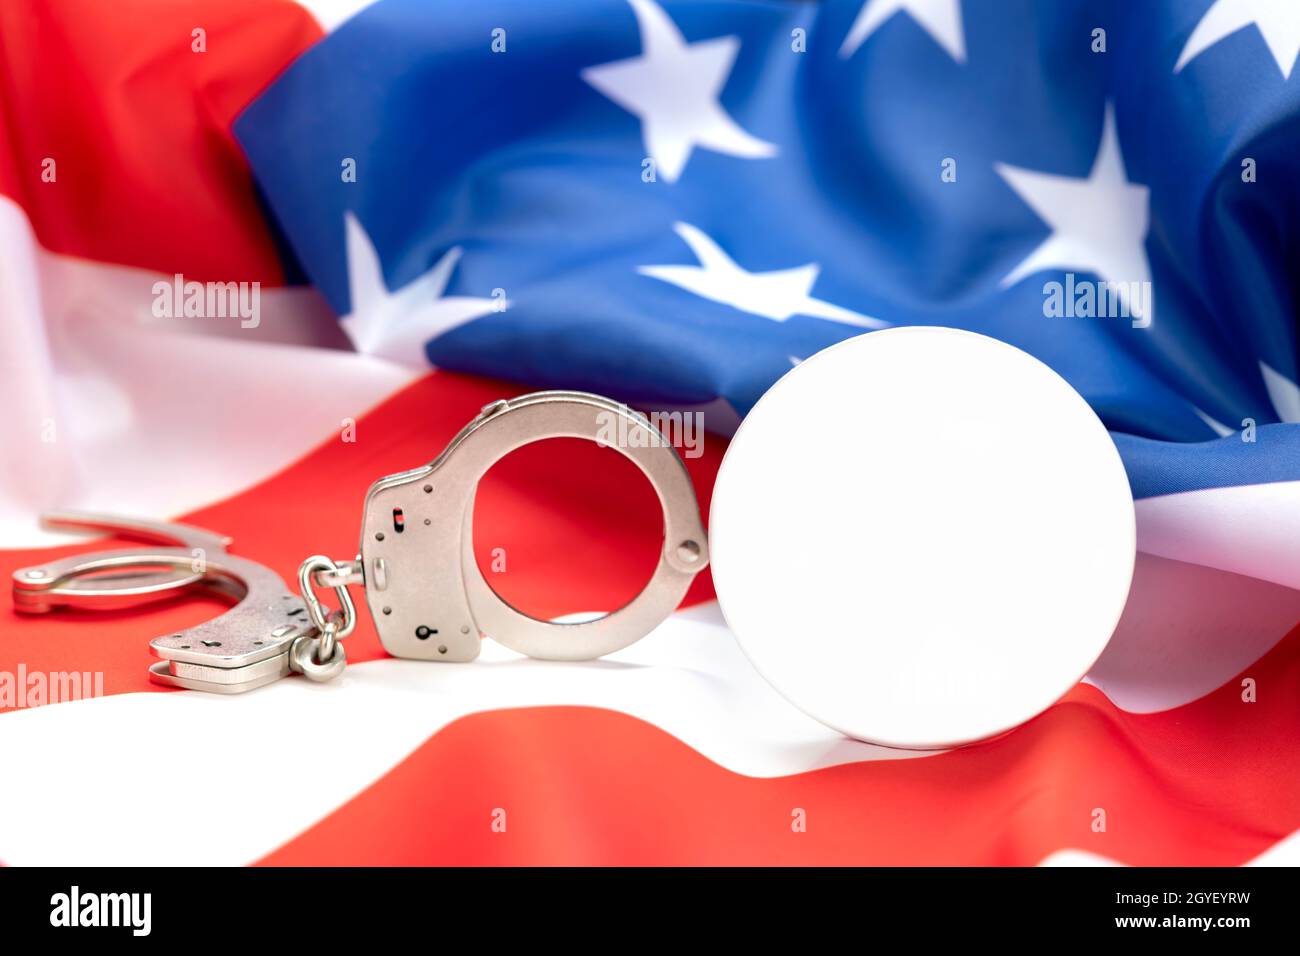 Die Bilder zeigen eine leere Schaltfläche zum Platzieren einer Kopie, die den Zusammenhang zwischen Gesetz, Ordnung und Verbrechen in Amerika anzeigt. Stockfoto